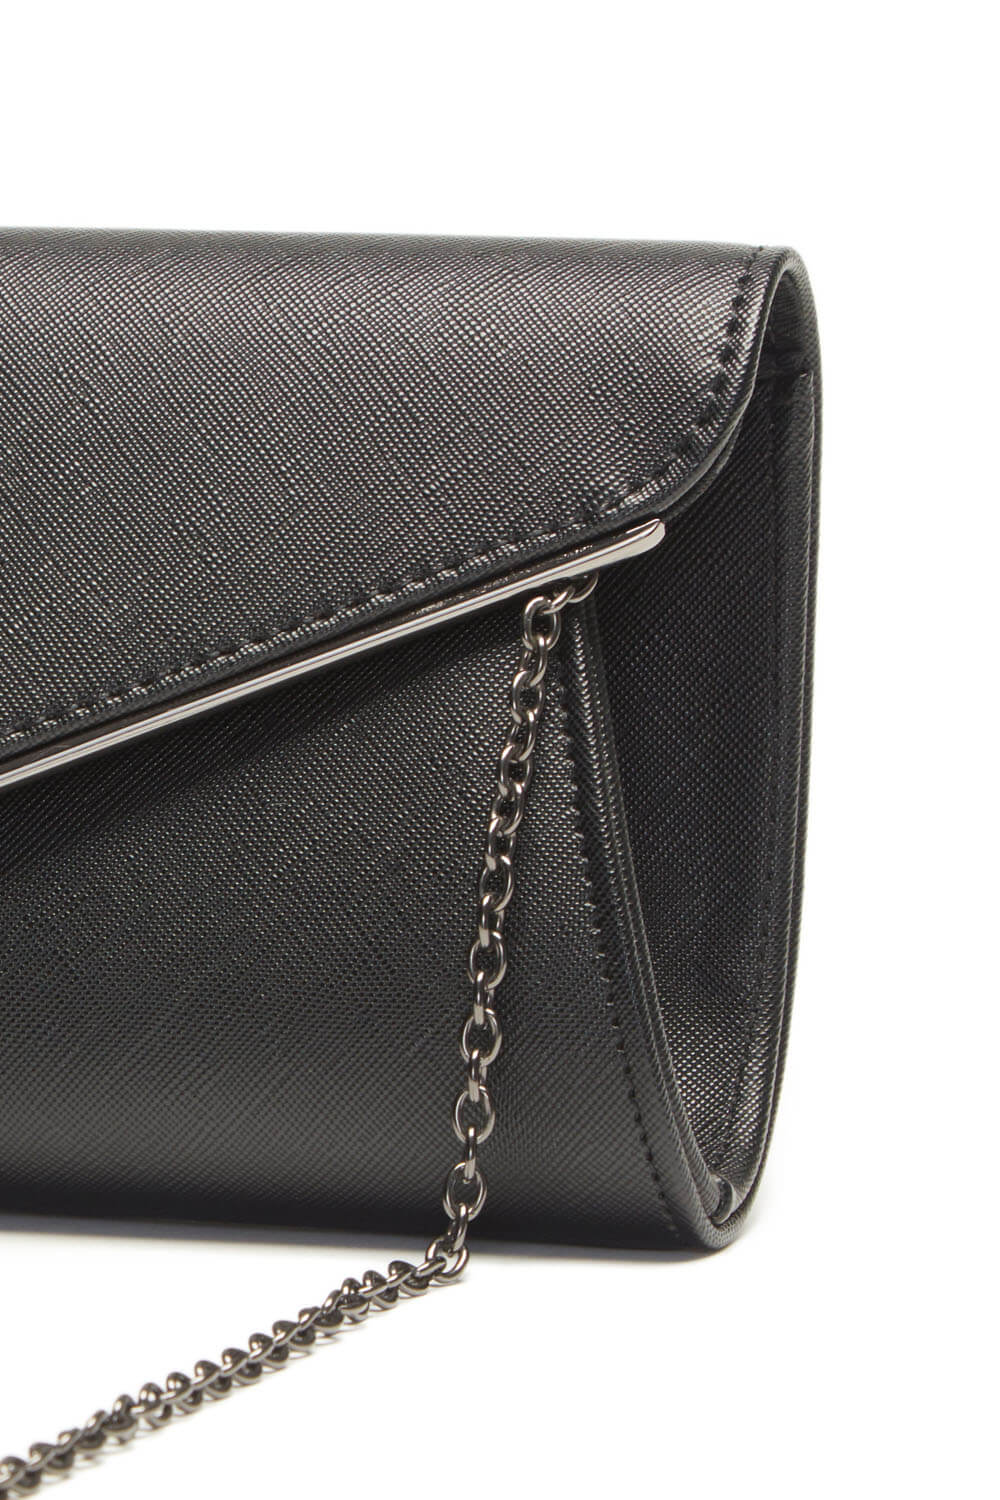 Black Envelope Clutch Bag, Image 4 of 6